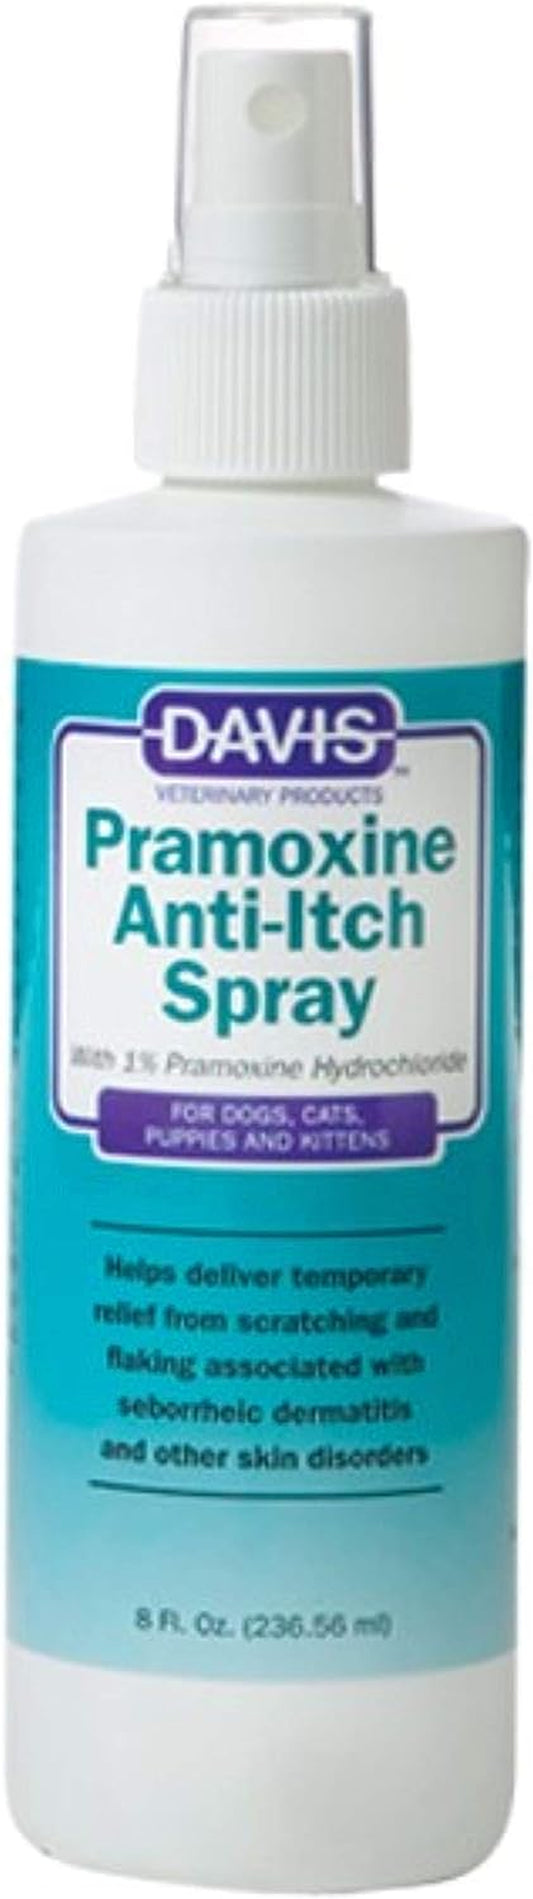 Davis Pramoxine Anti-Itch Dog and Cat Spray, 8-Ounce